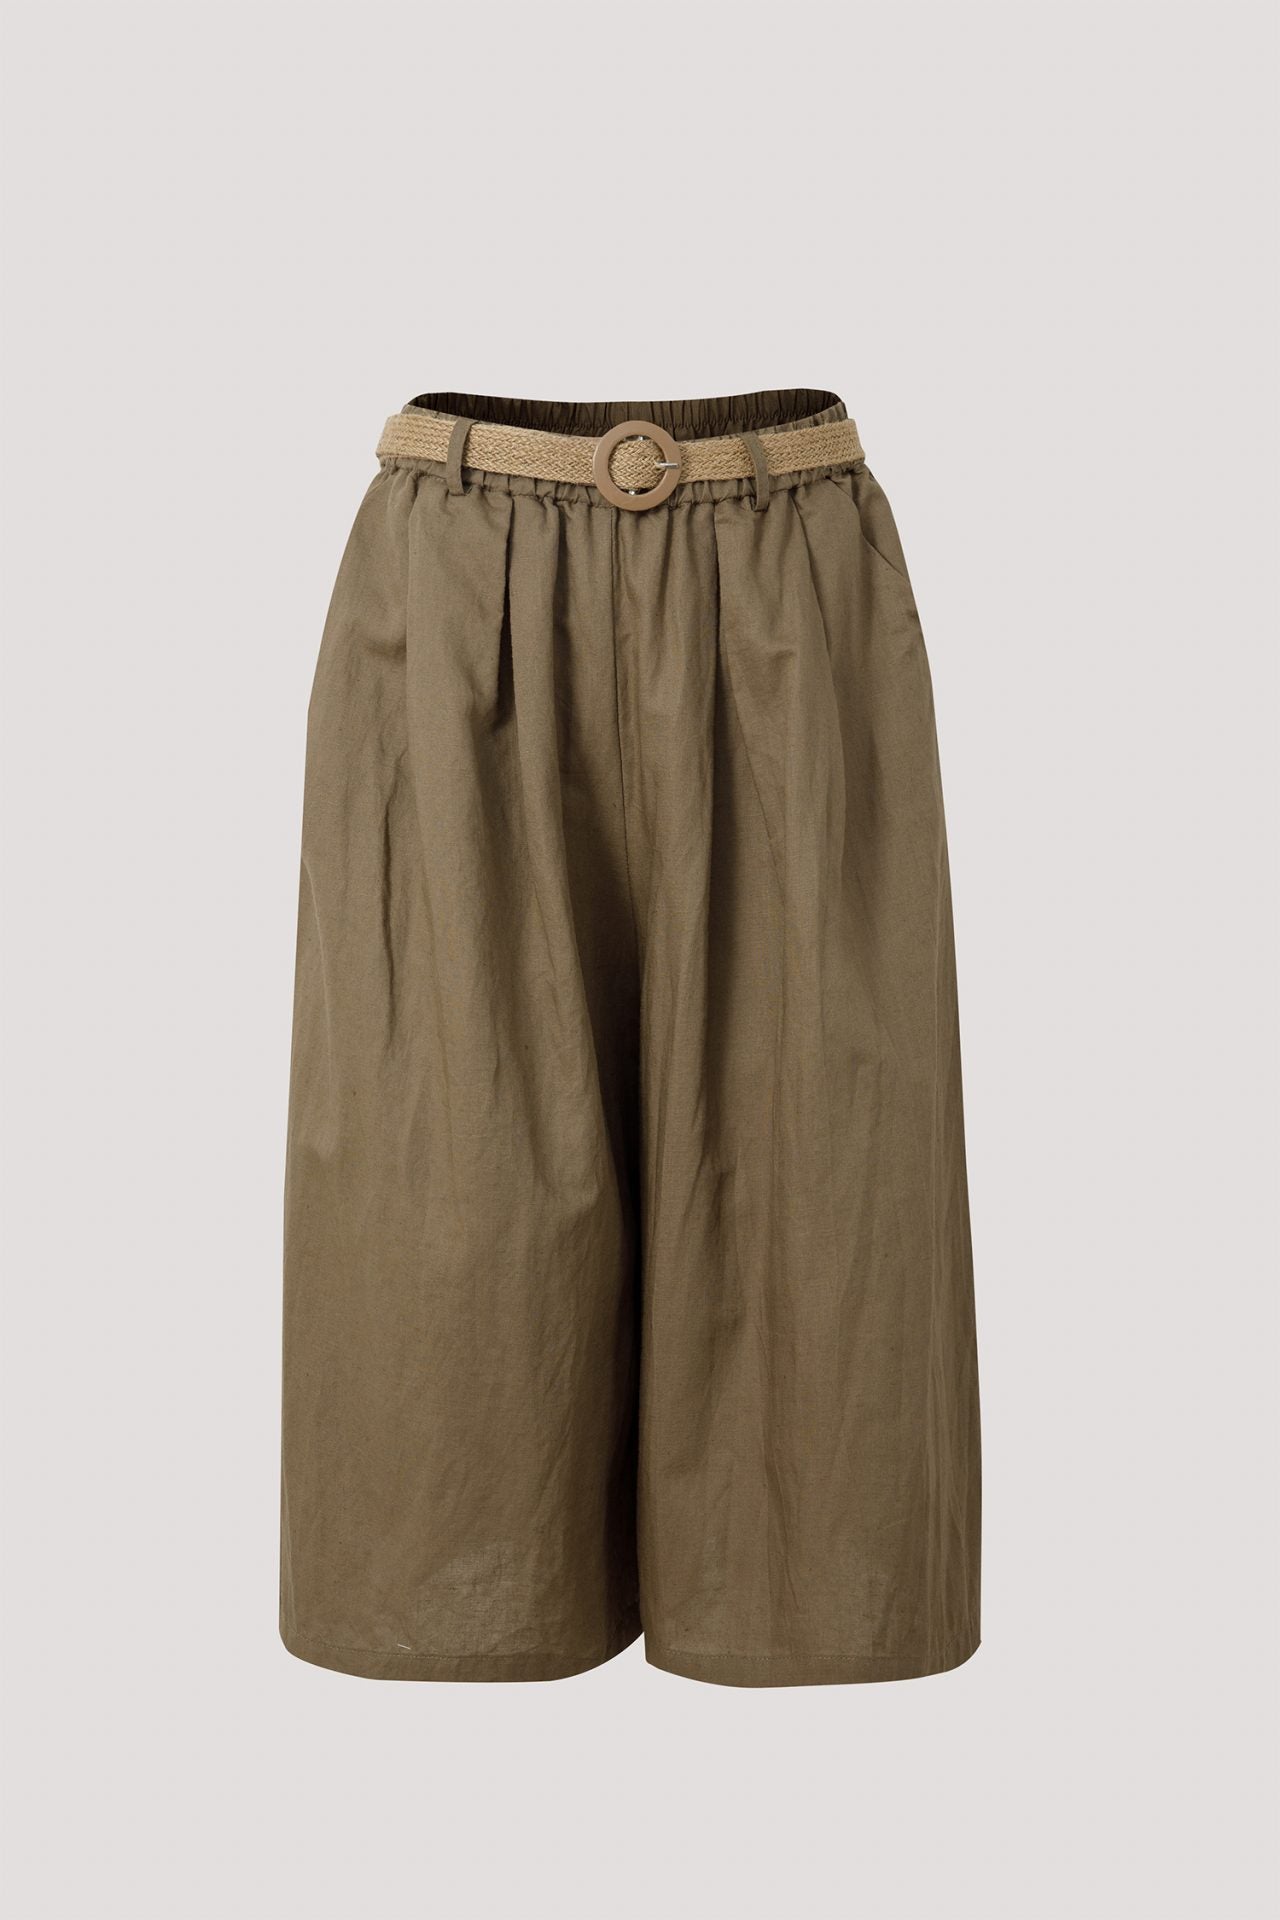 bp 9360 belted pants brown